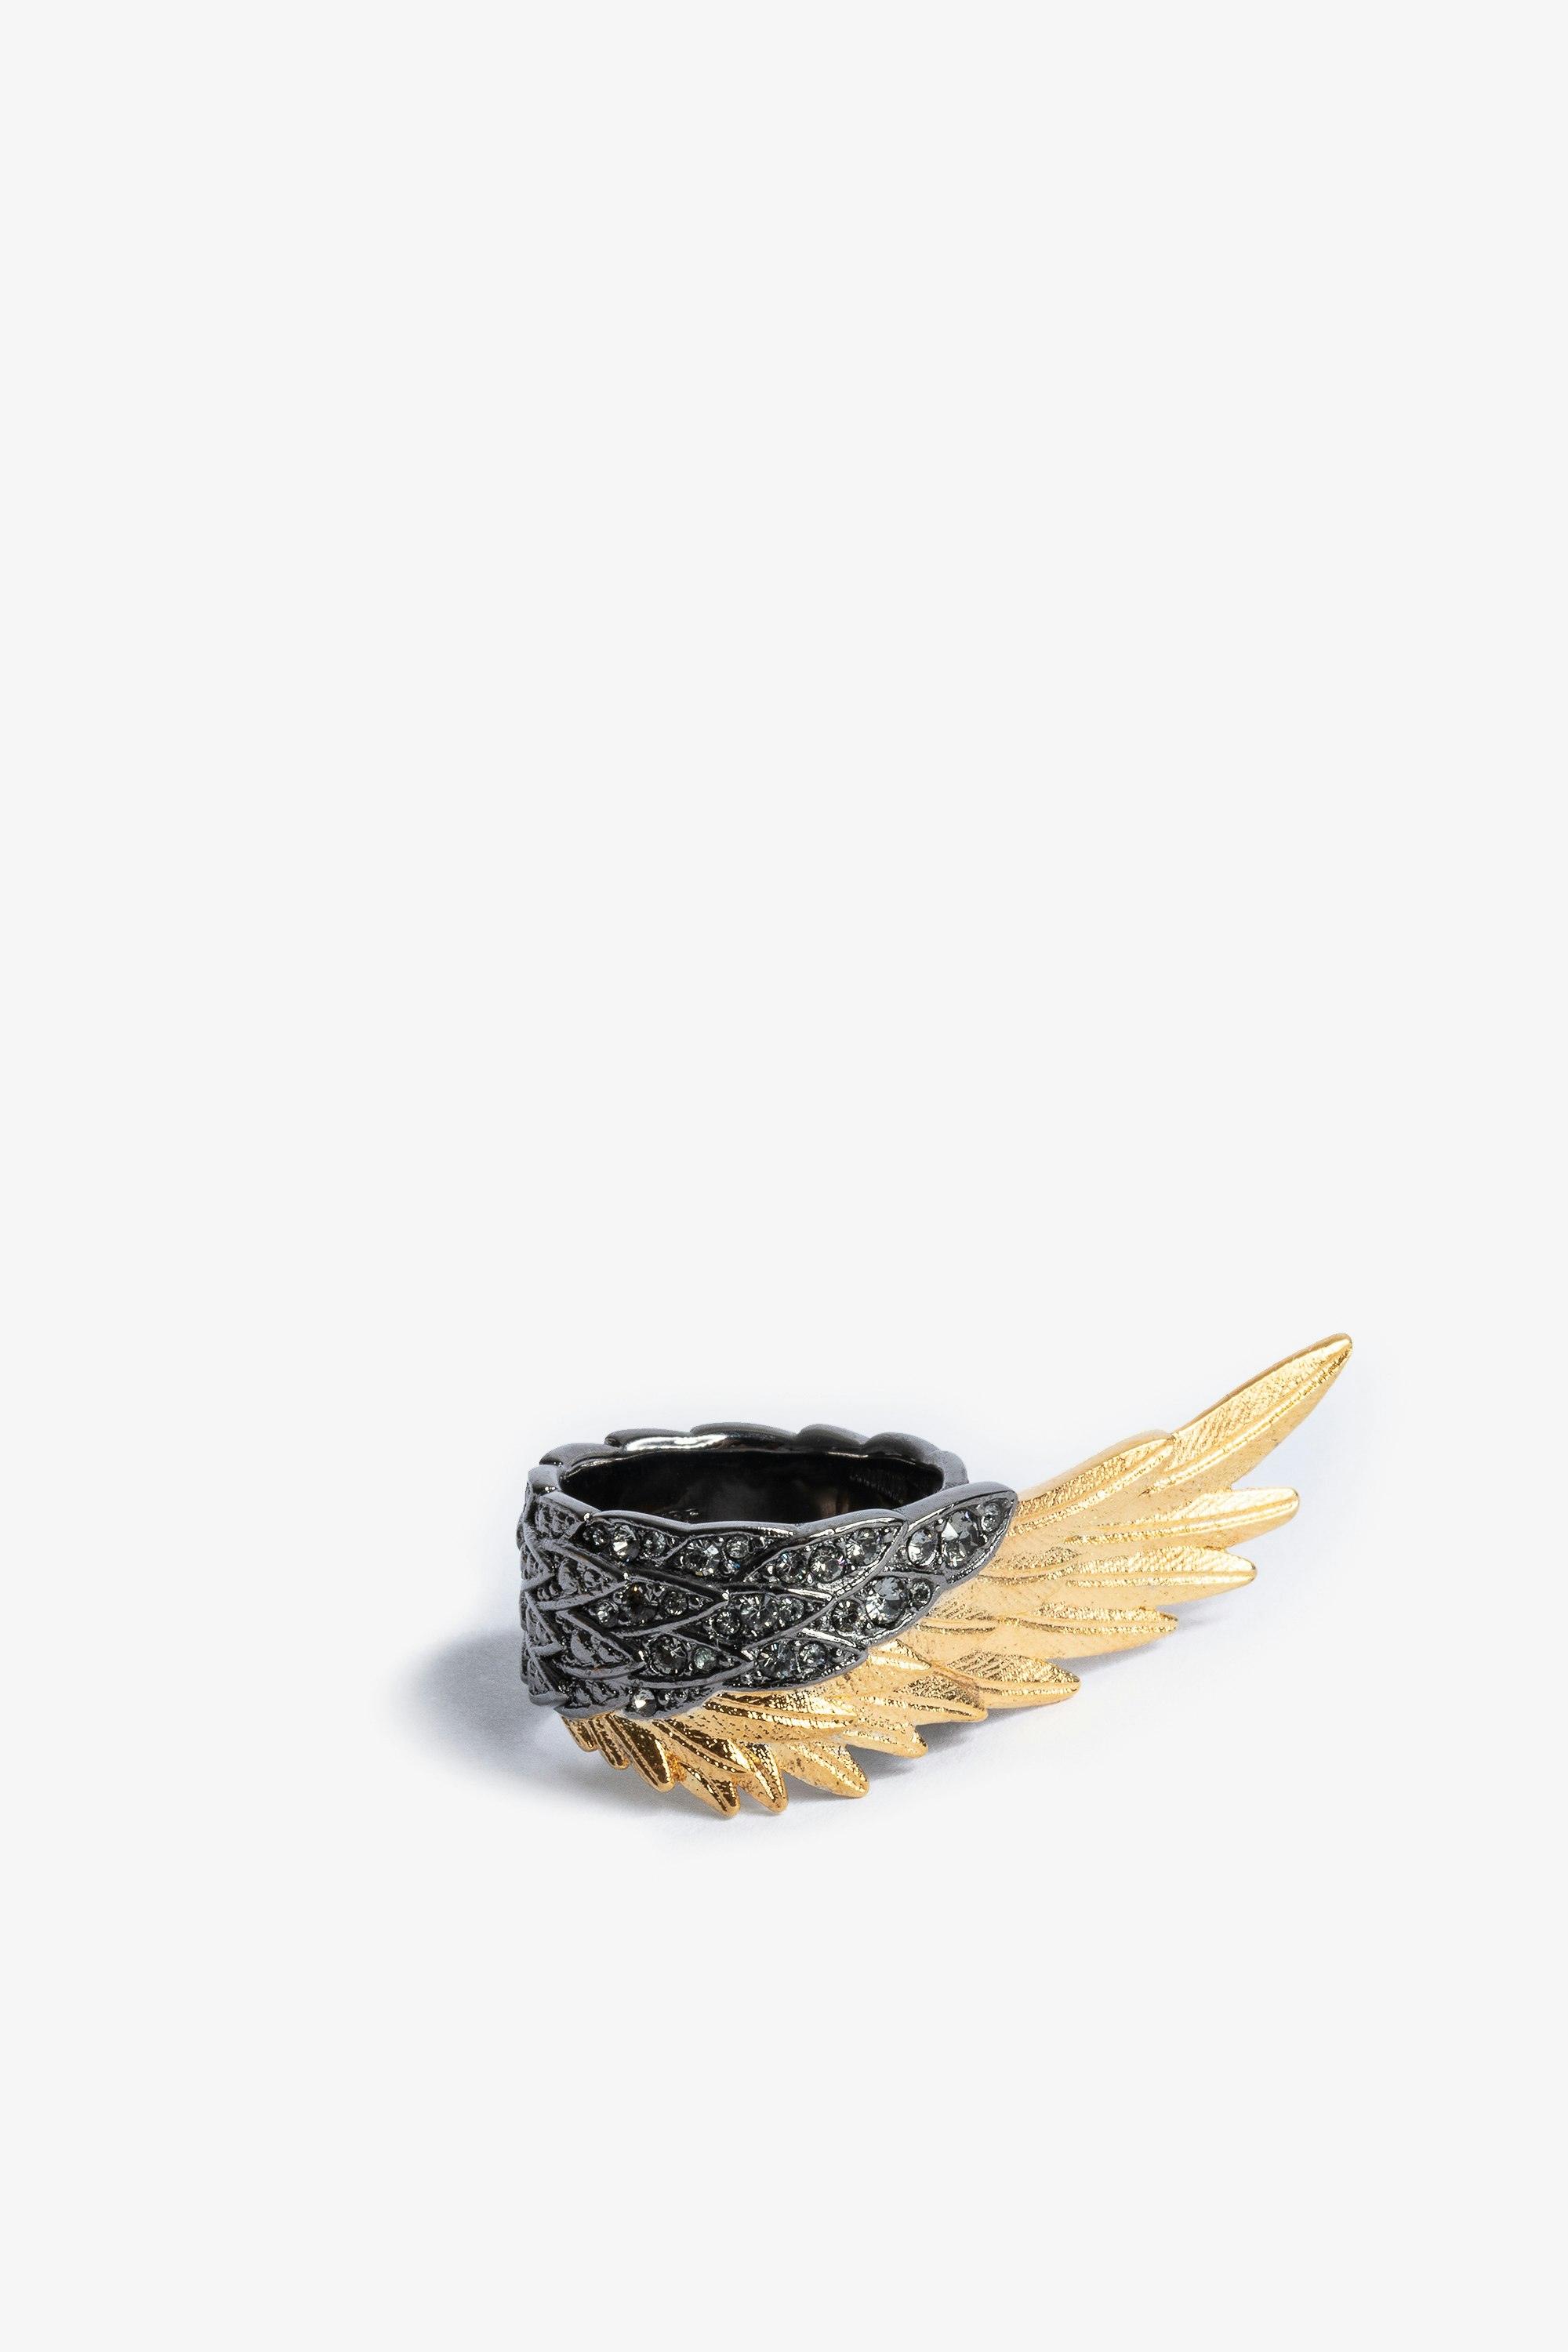 Bague Rock Feather Spread Your Wings - Bague en laiton doré et noirci sertie de cristaux.